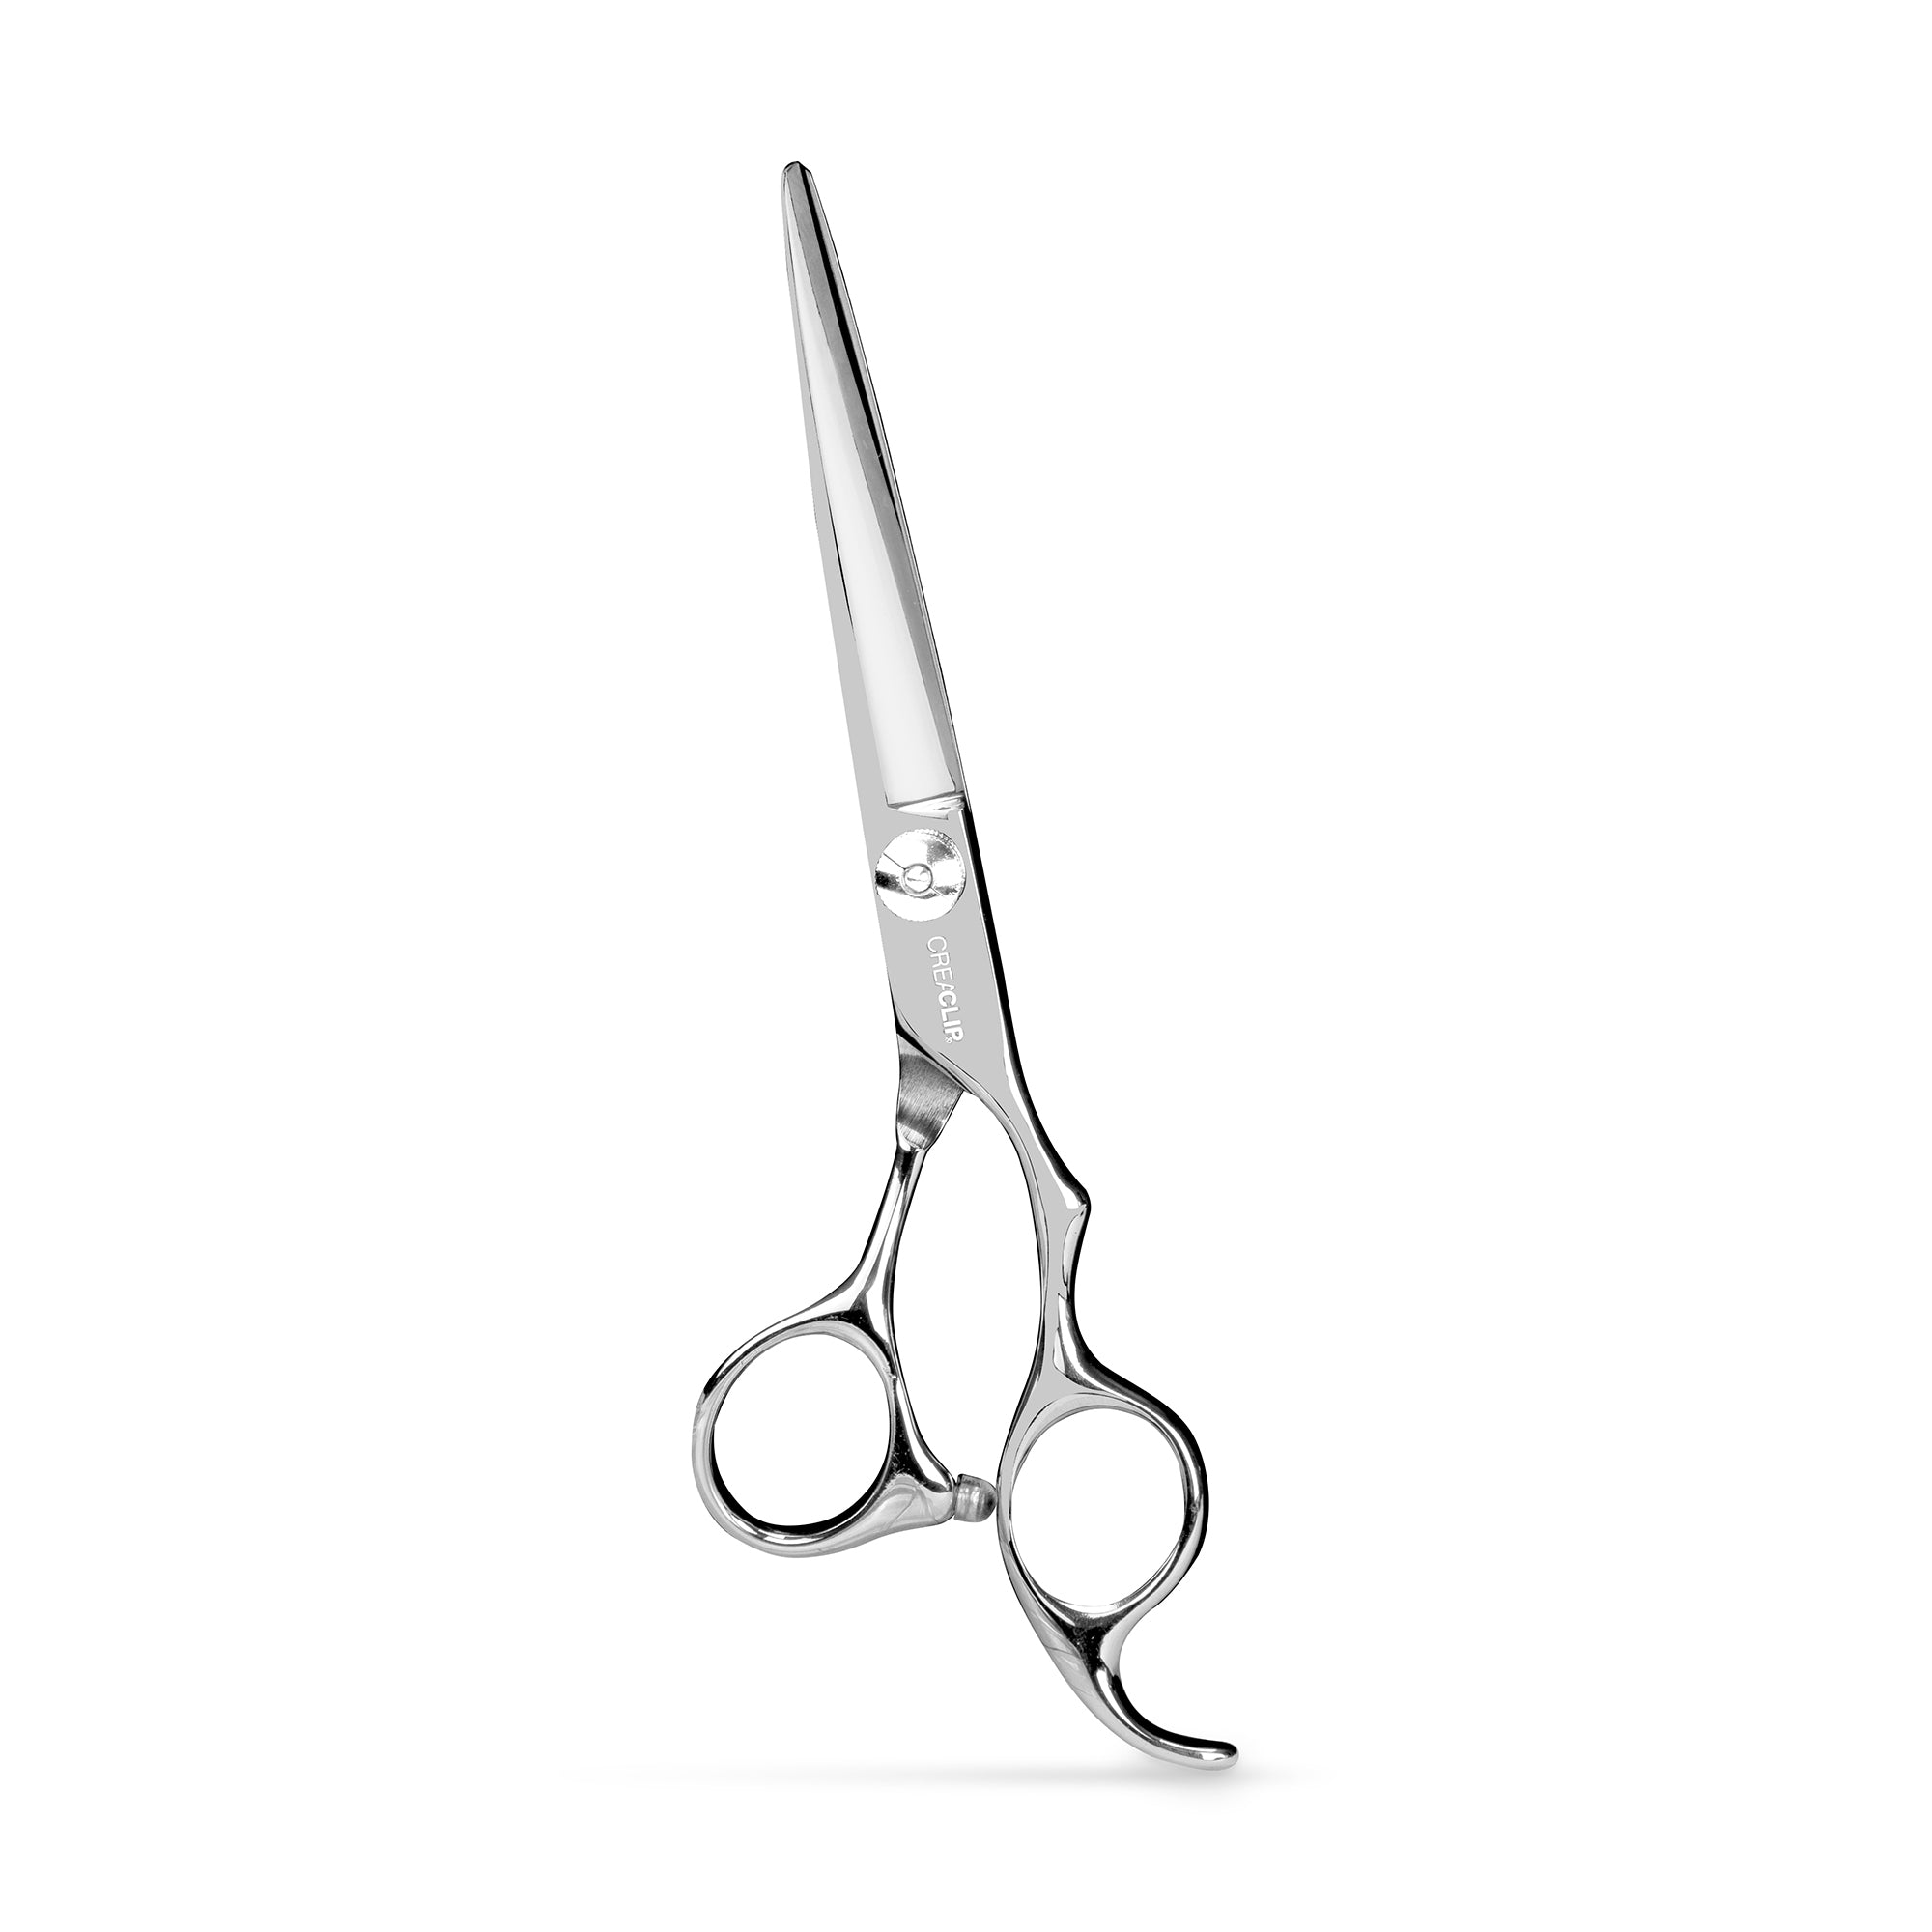 CreaClip Premium Professional Hair Cutting Scissors